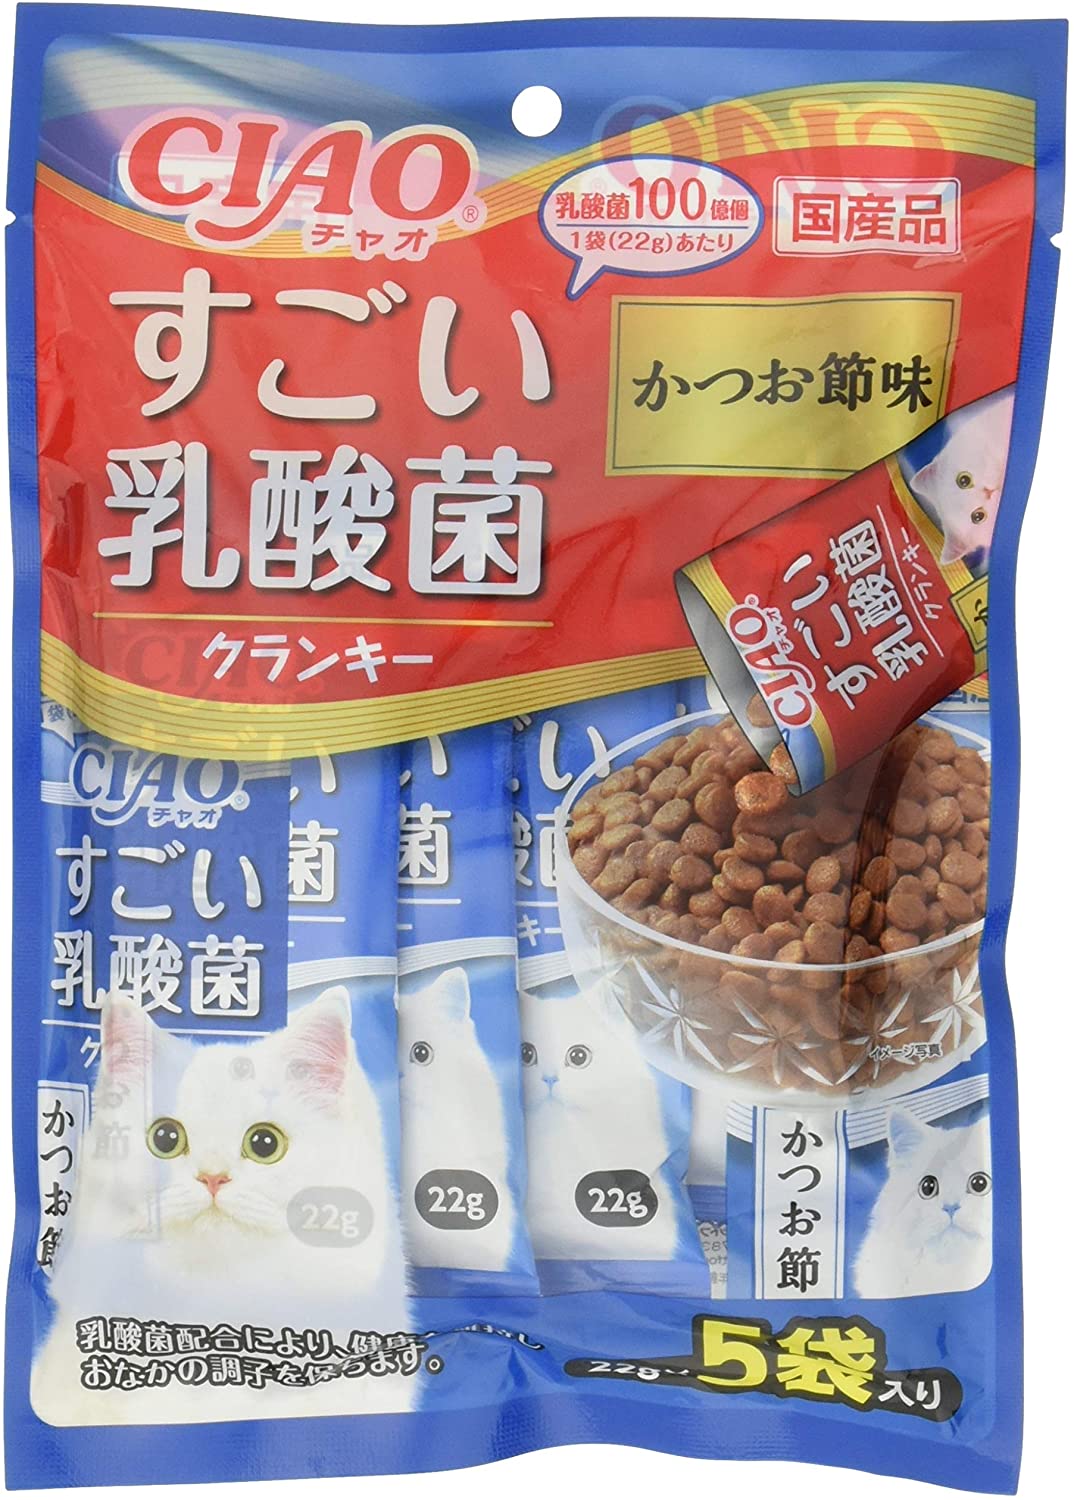 【日本製】 チャオ (CIAO) キャットフード すごい乳酸菌クランキー かつお節味 22g5袋6個セット キャットフード